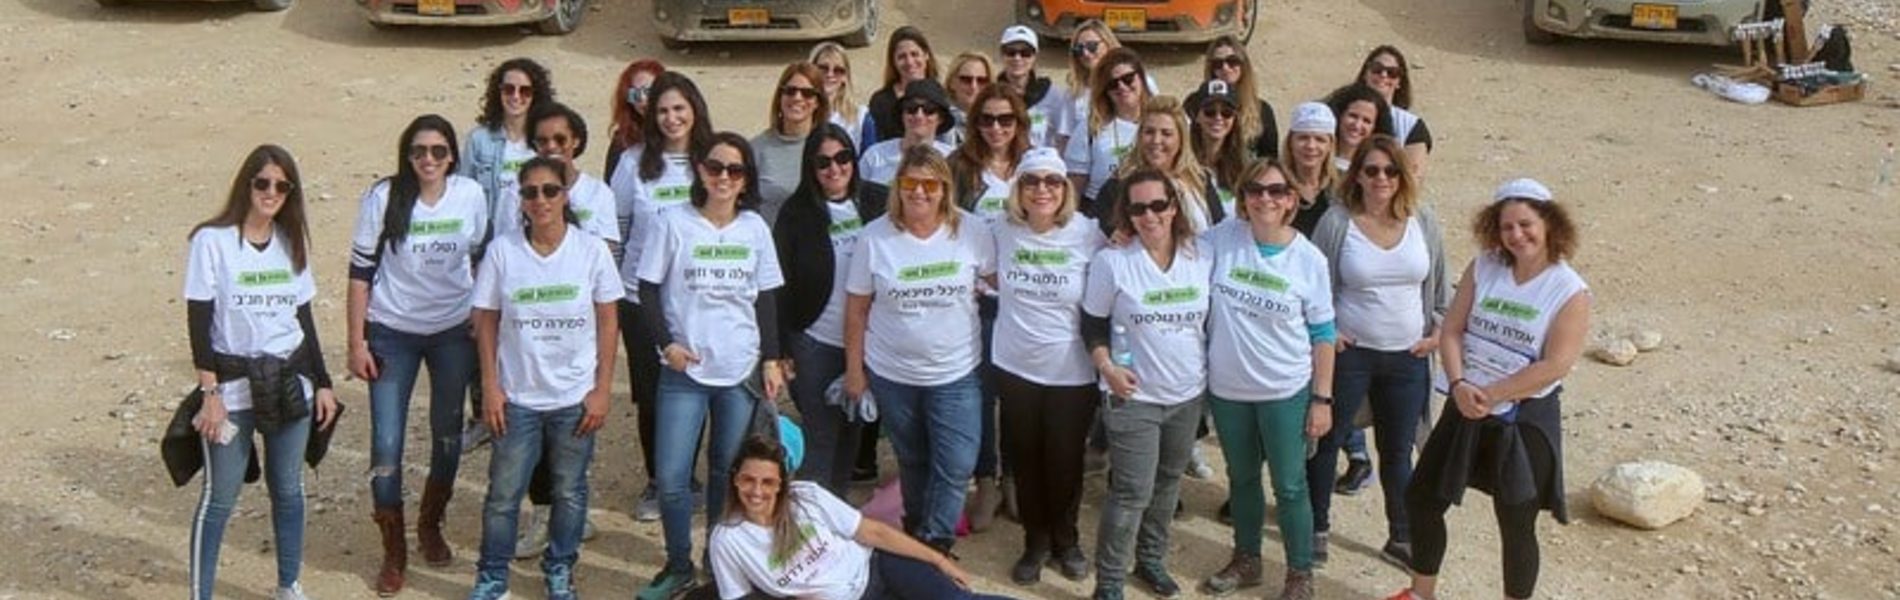 נבחרת און לייף: מסע נשי במדבר עם הנשים שאת רוצה סביבך כל השנה